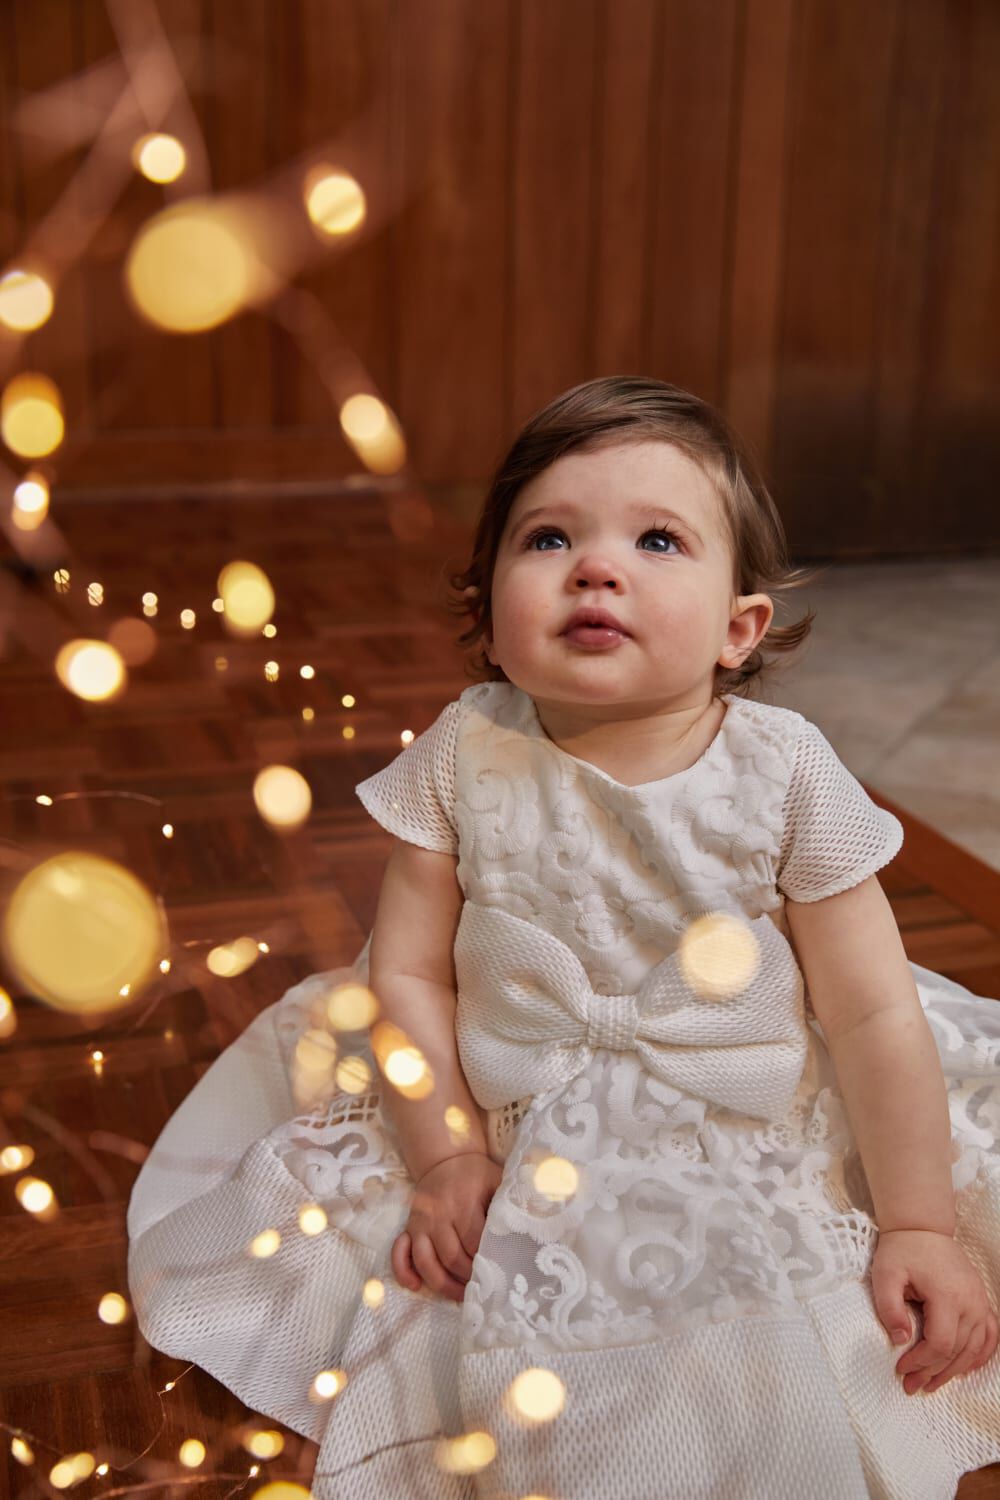 BABY GIRL AVA STARLET DRESS in colour SNOW WHITE